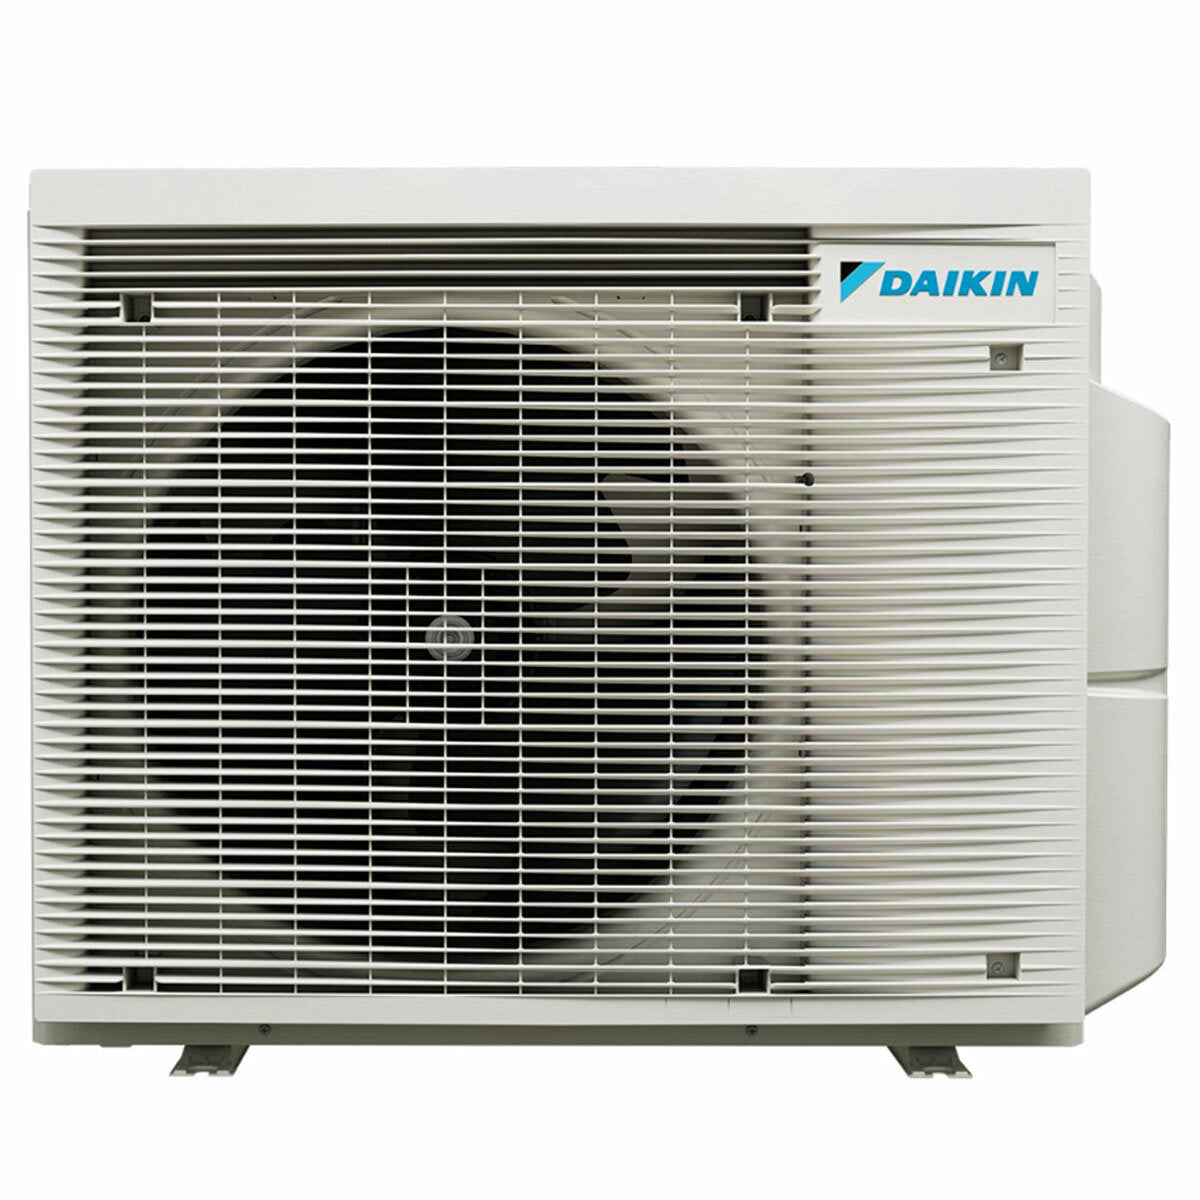 Daikin Stylish Trial Split Klimaanlage 7000 + 7000 + 9000 BTU Inverter A +++ WLAN Außengerät 5,2 kW